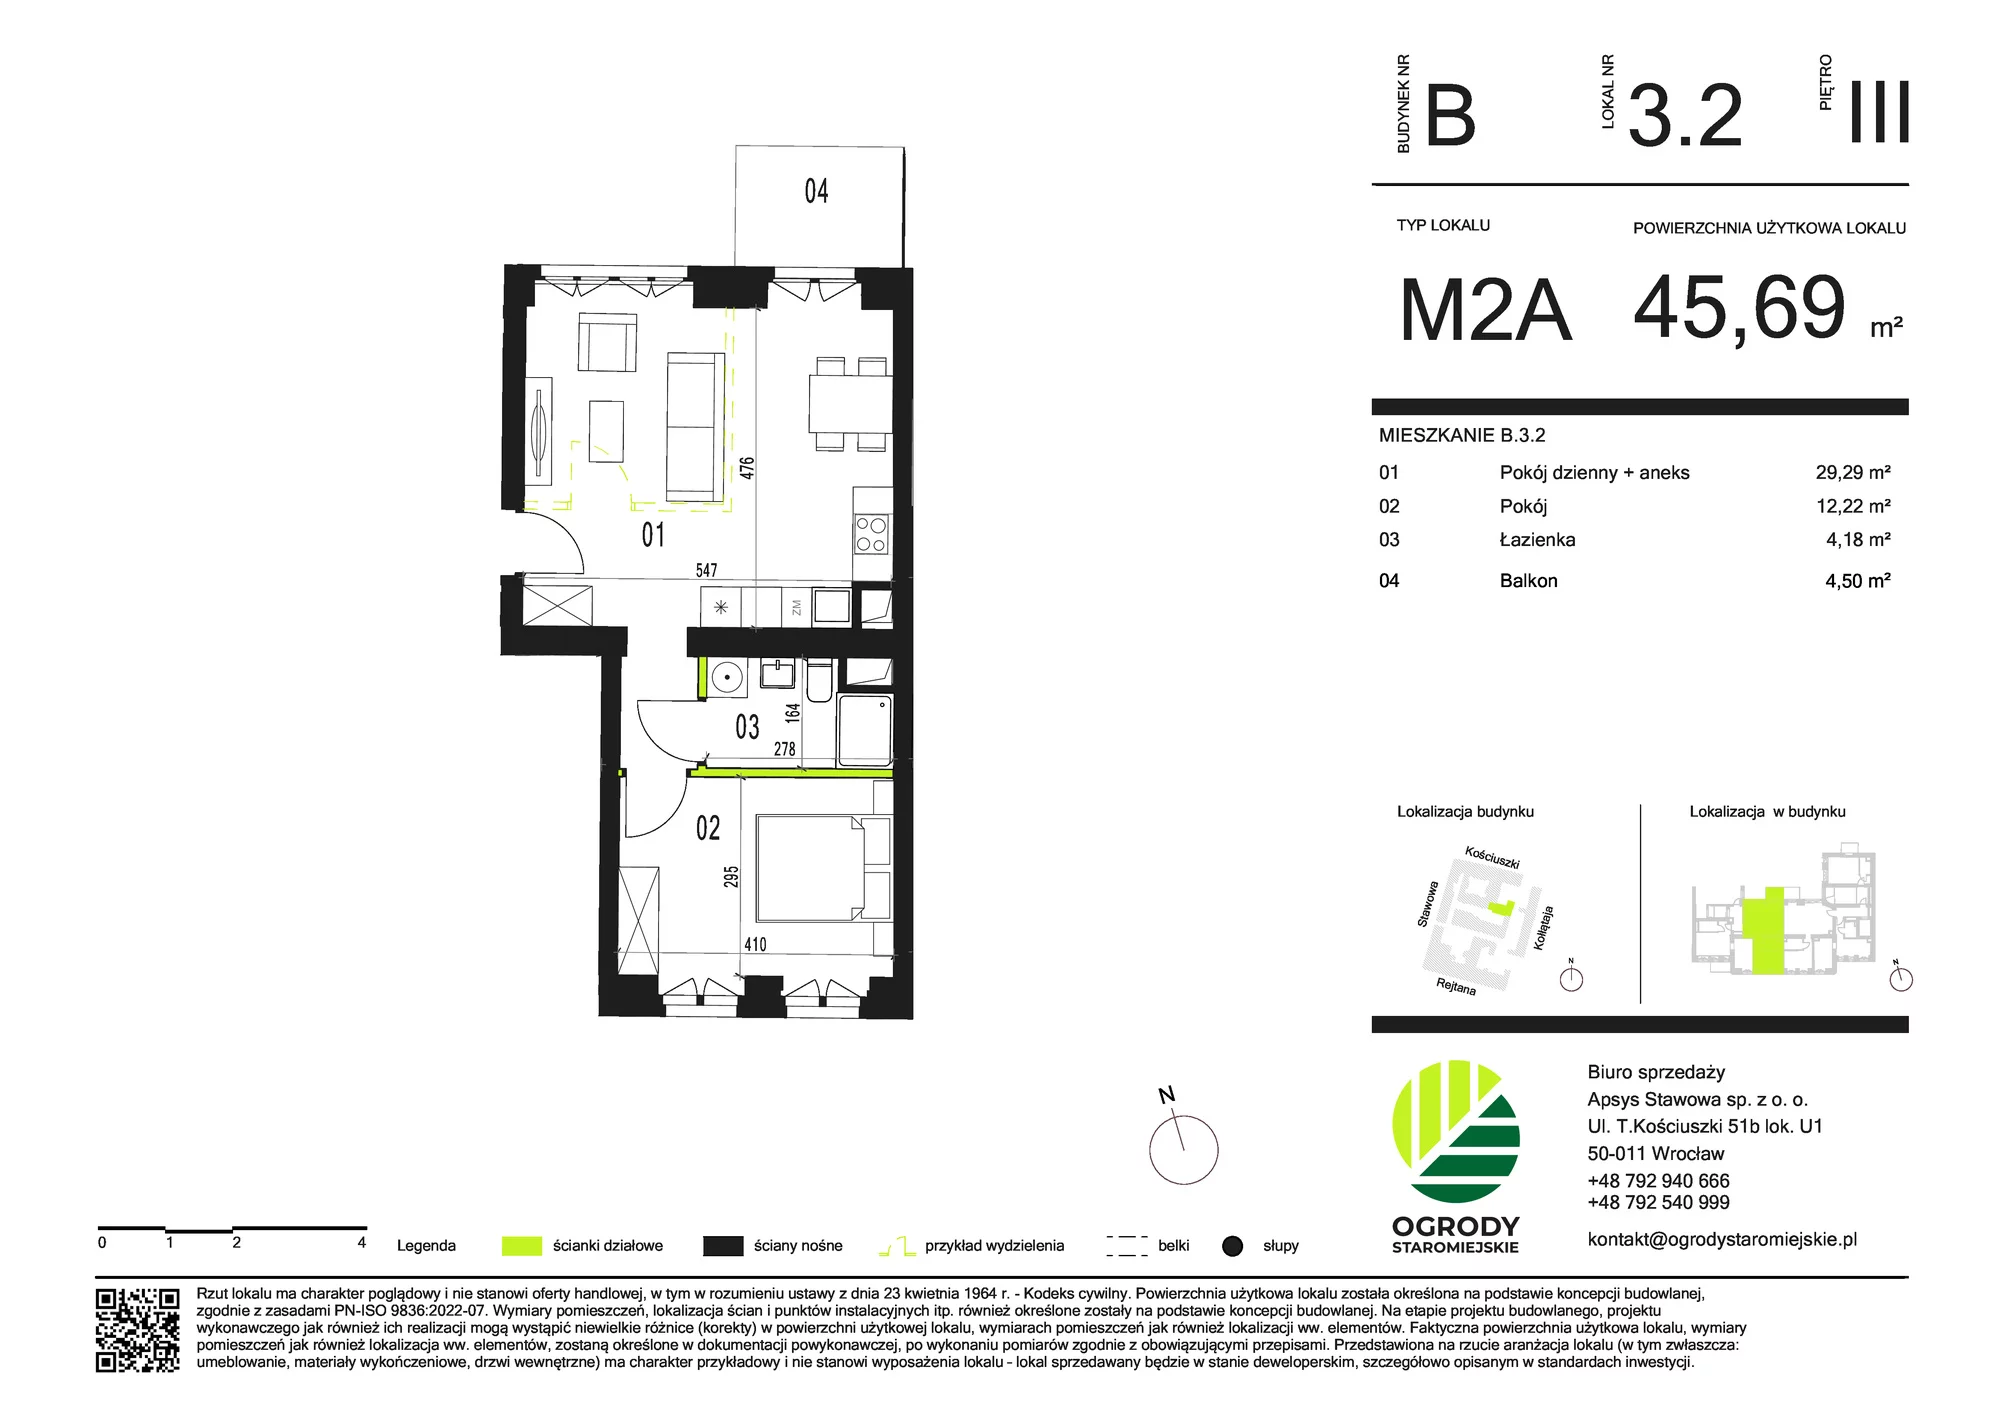 Mieszkanie 45,69 m², piętro 3, oferta nr B.3.2, Ogrody Staromiejskie, Wrocław, Przedmieście Świdnickie, ul. Stawowa 10